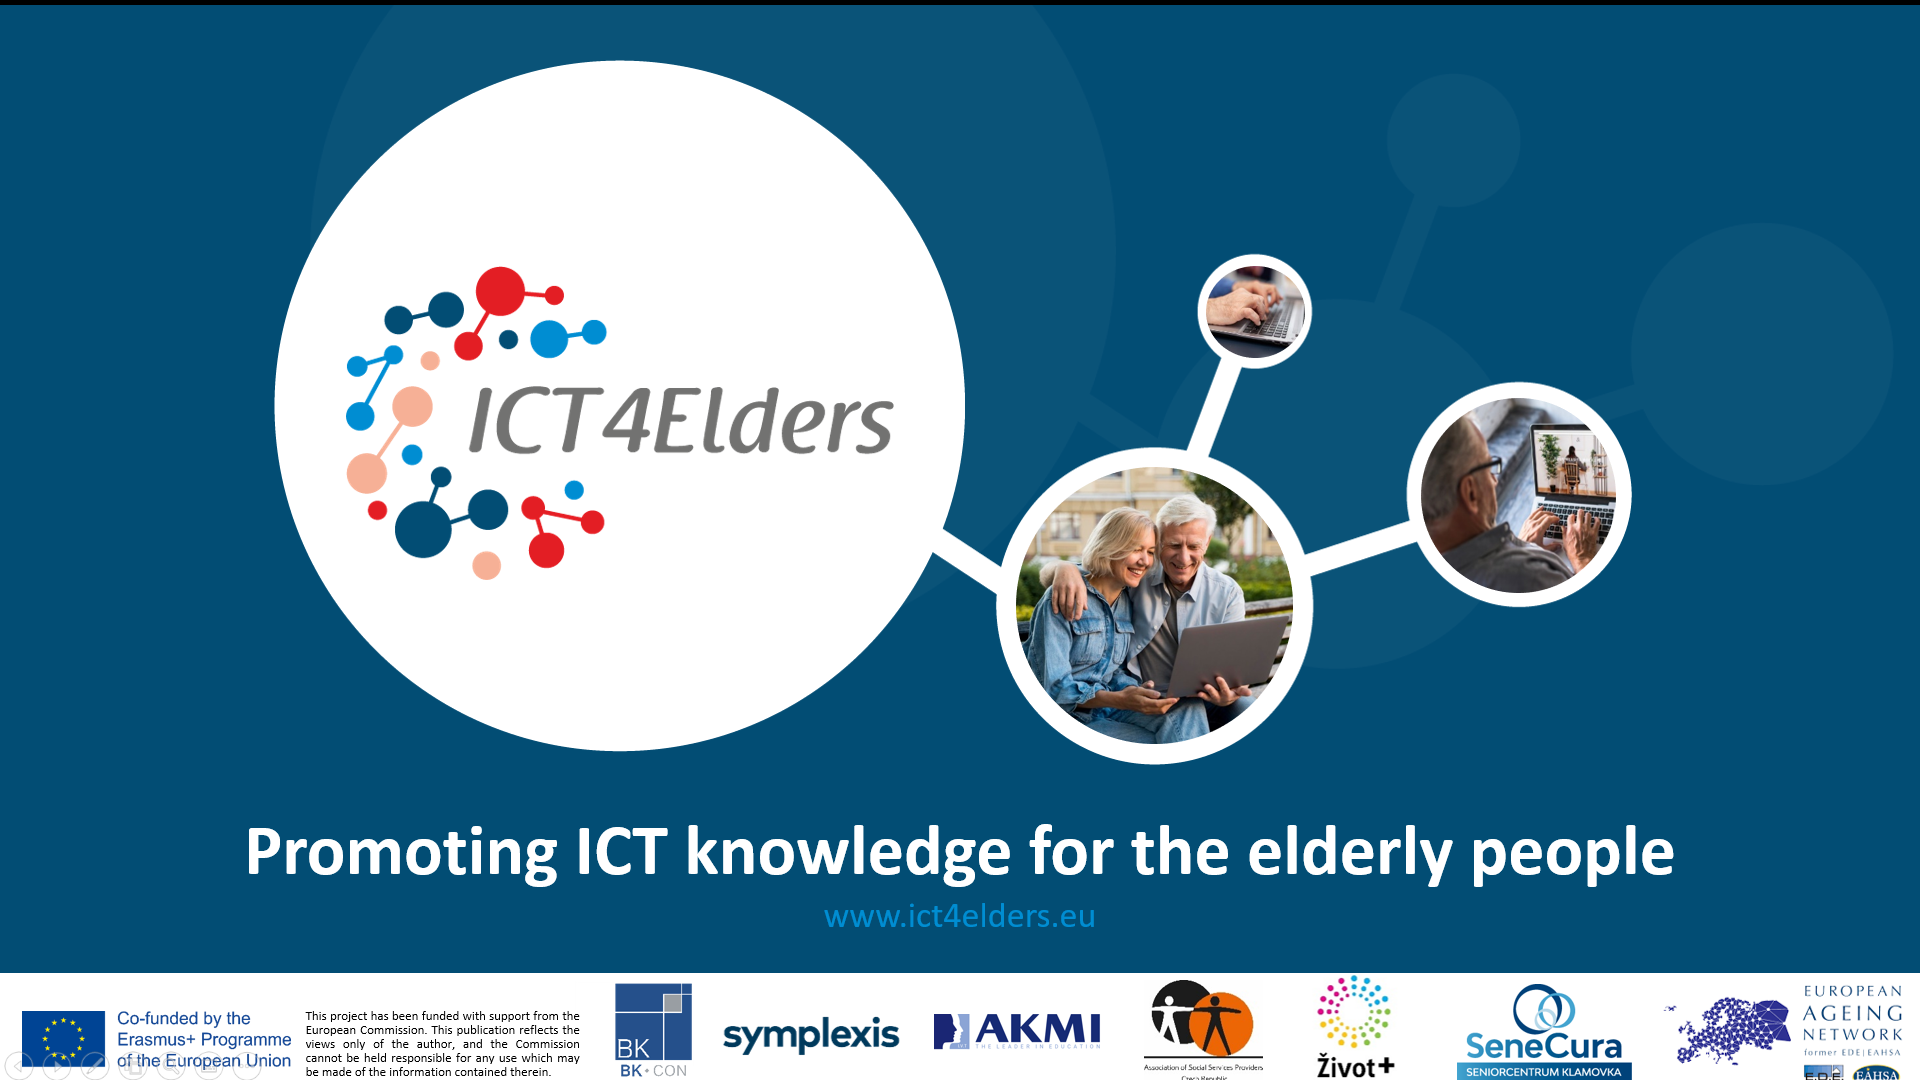 Činnosti a pokrok projektu ICT4Elders v posledních měsících